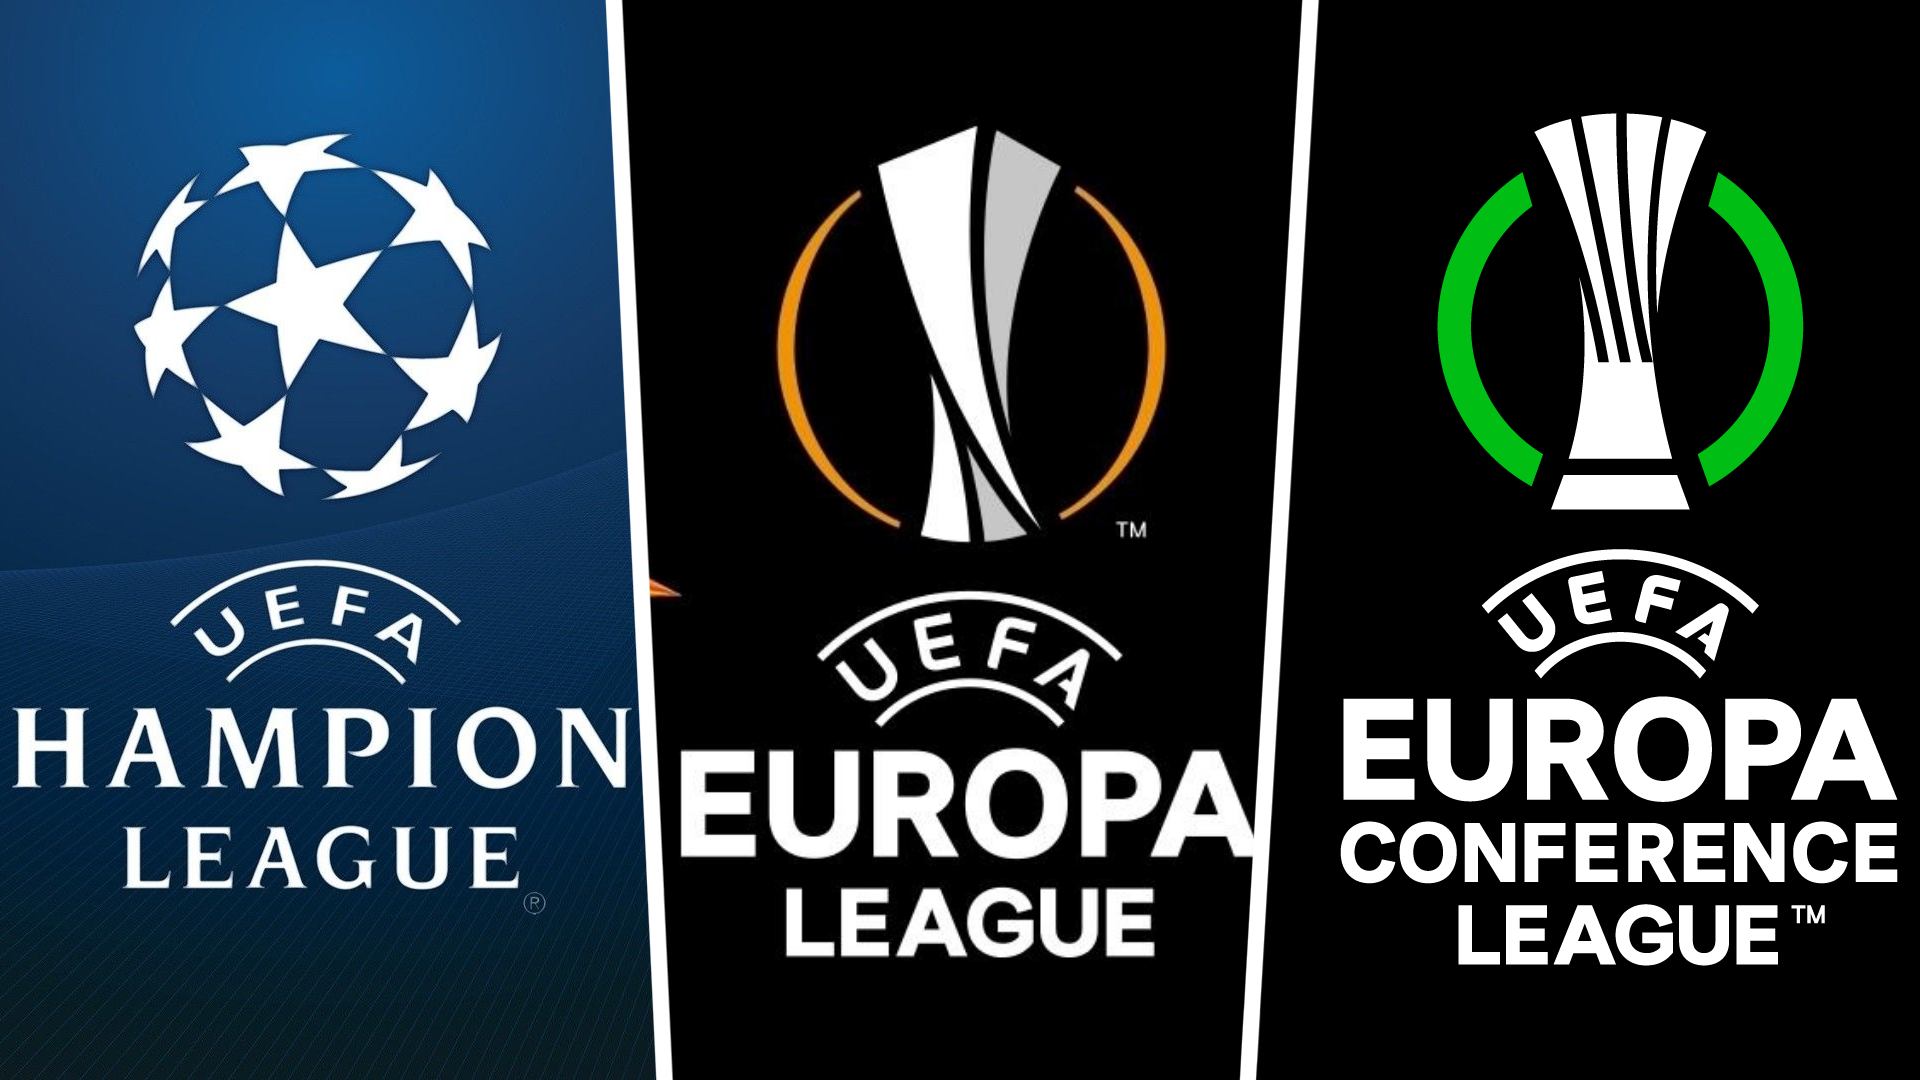 Liga uefa conference league